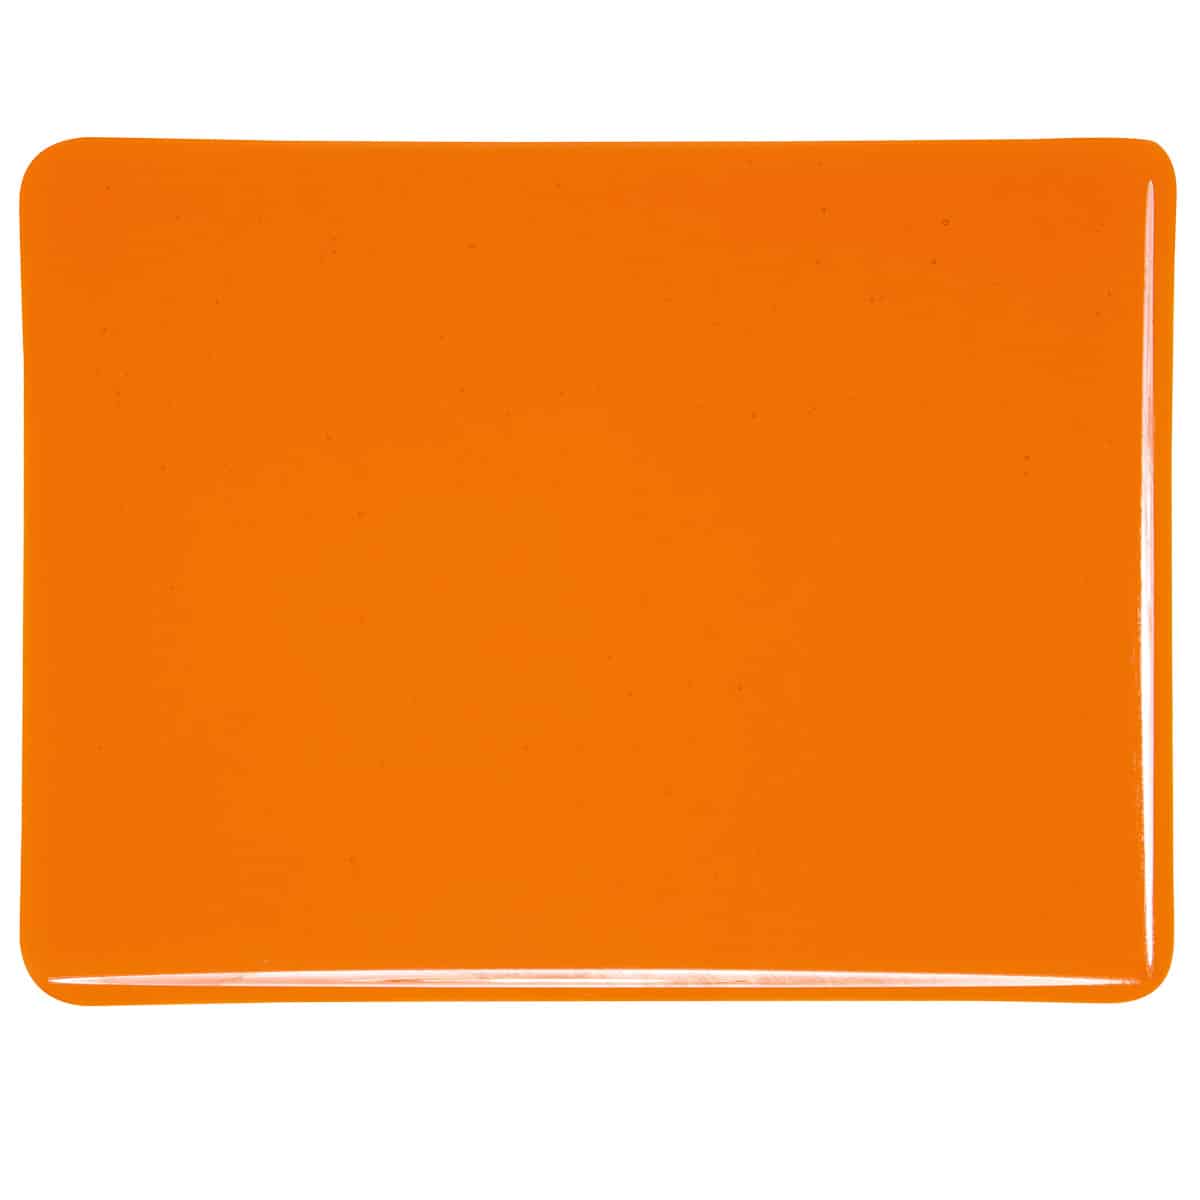 001025 Orange